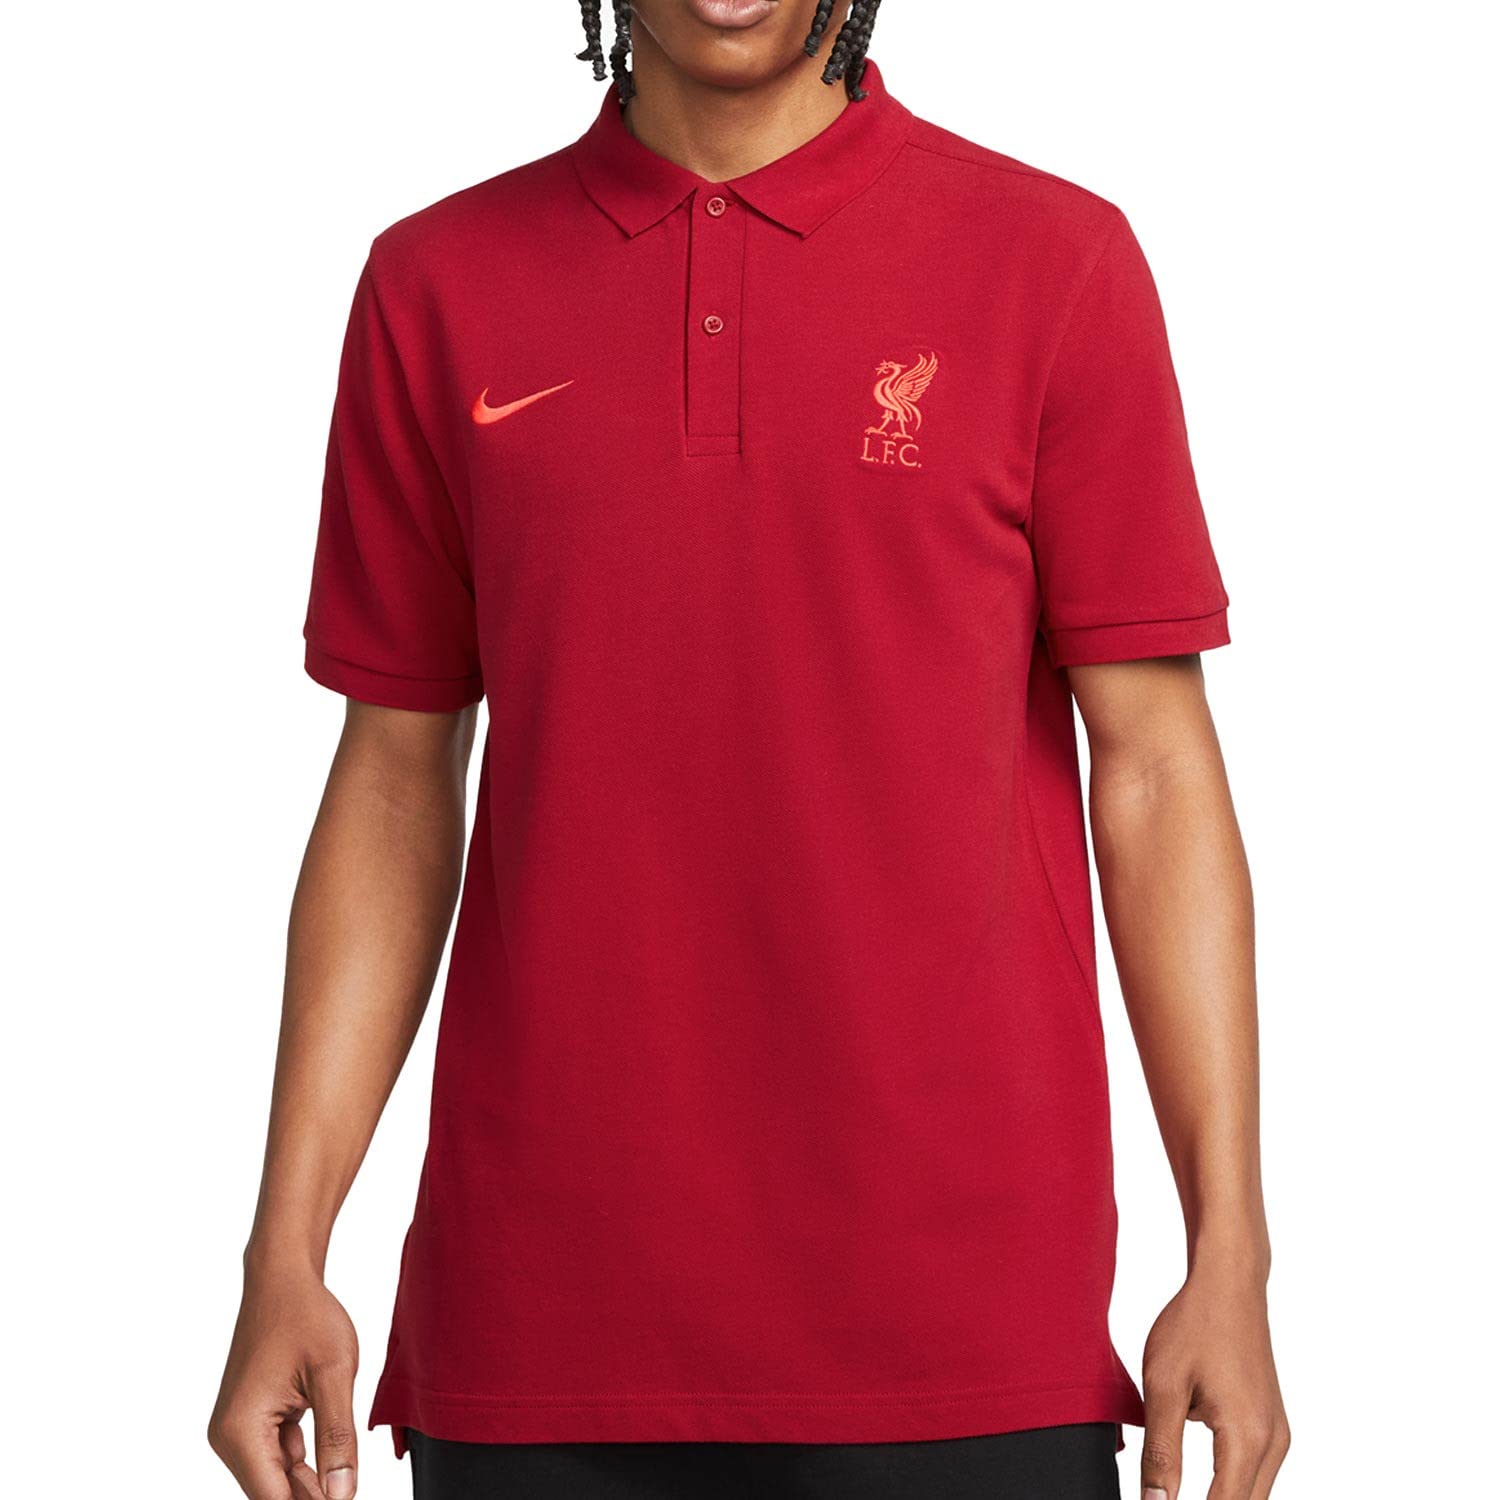 Liverpool FC Herren Saison 2022/23 Offizielle Trikot T-Shirt , Tough Red/Siren Red, S